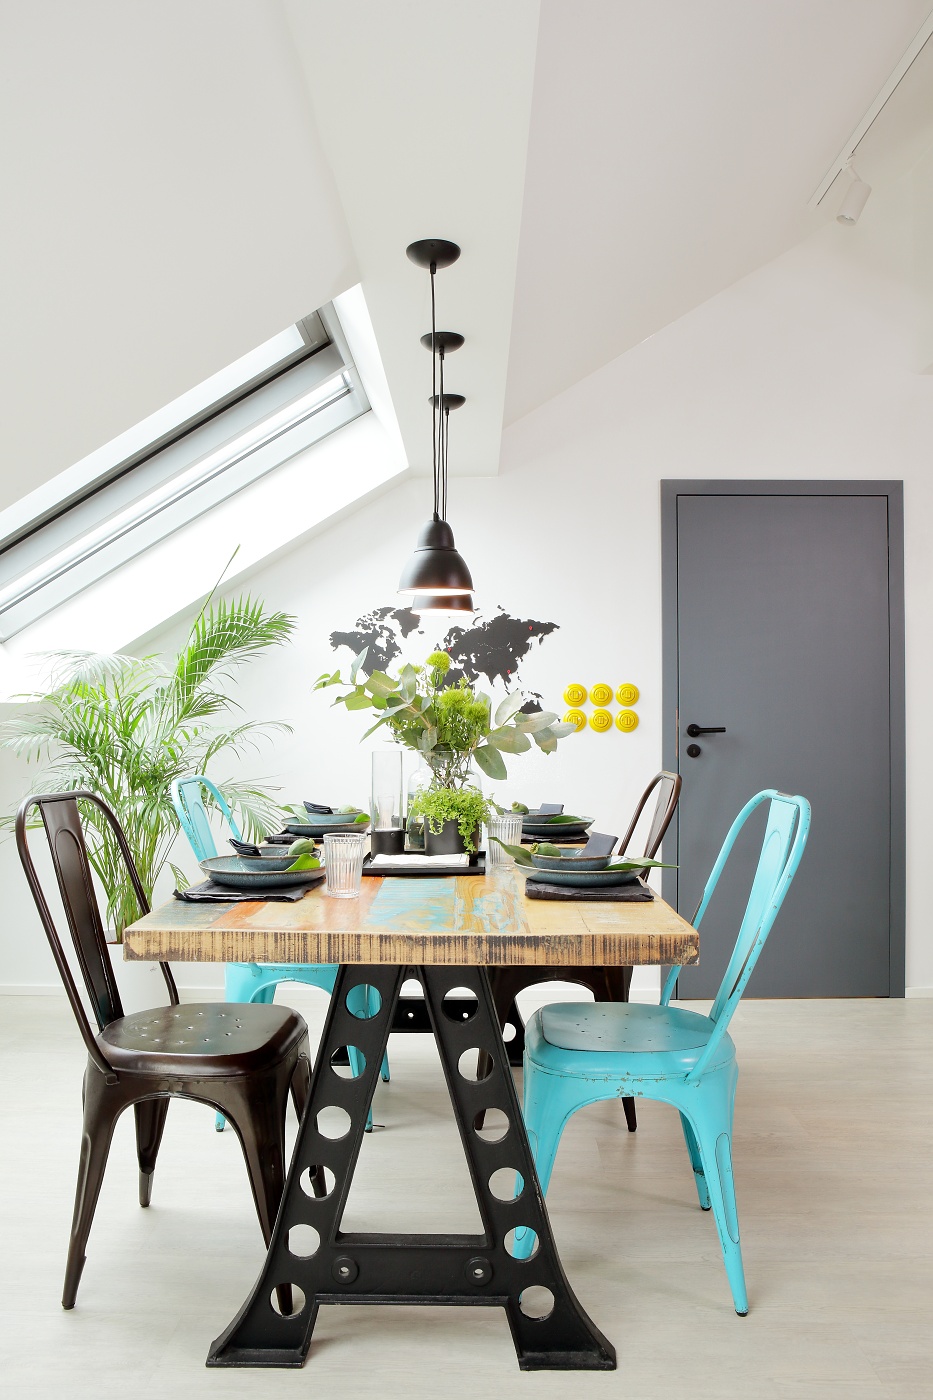 Khu vực ăn uống bố trí góc trái phòng khách với bộ bàn ăn bằng gỗ kết hợp kim loại, những chiếc ghế sơn mới bằng gam màu xanh ngọc lam và đen cho cảm giác vừa nhẹ nhàng vừa vững chãi. 